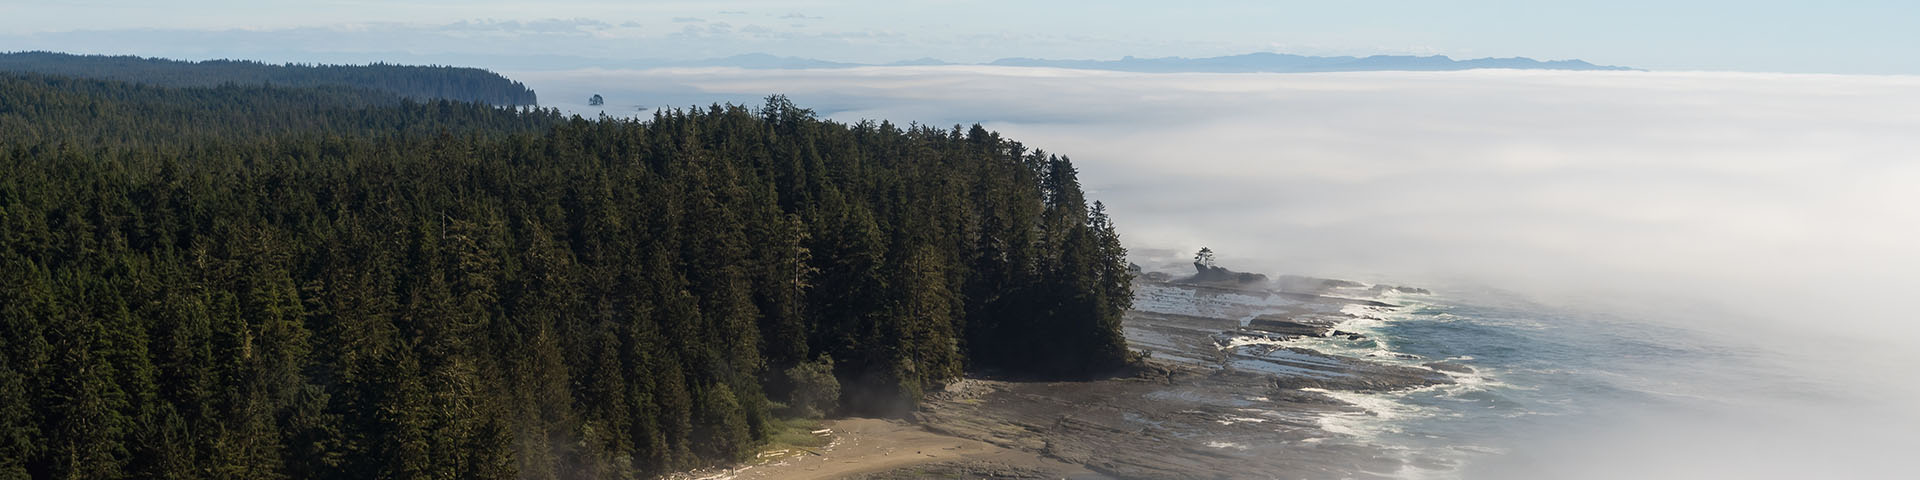 Vue aérienne de la ligne de côte montrant le brouillard qui se déplace sur la plage et les terres boisées.